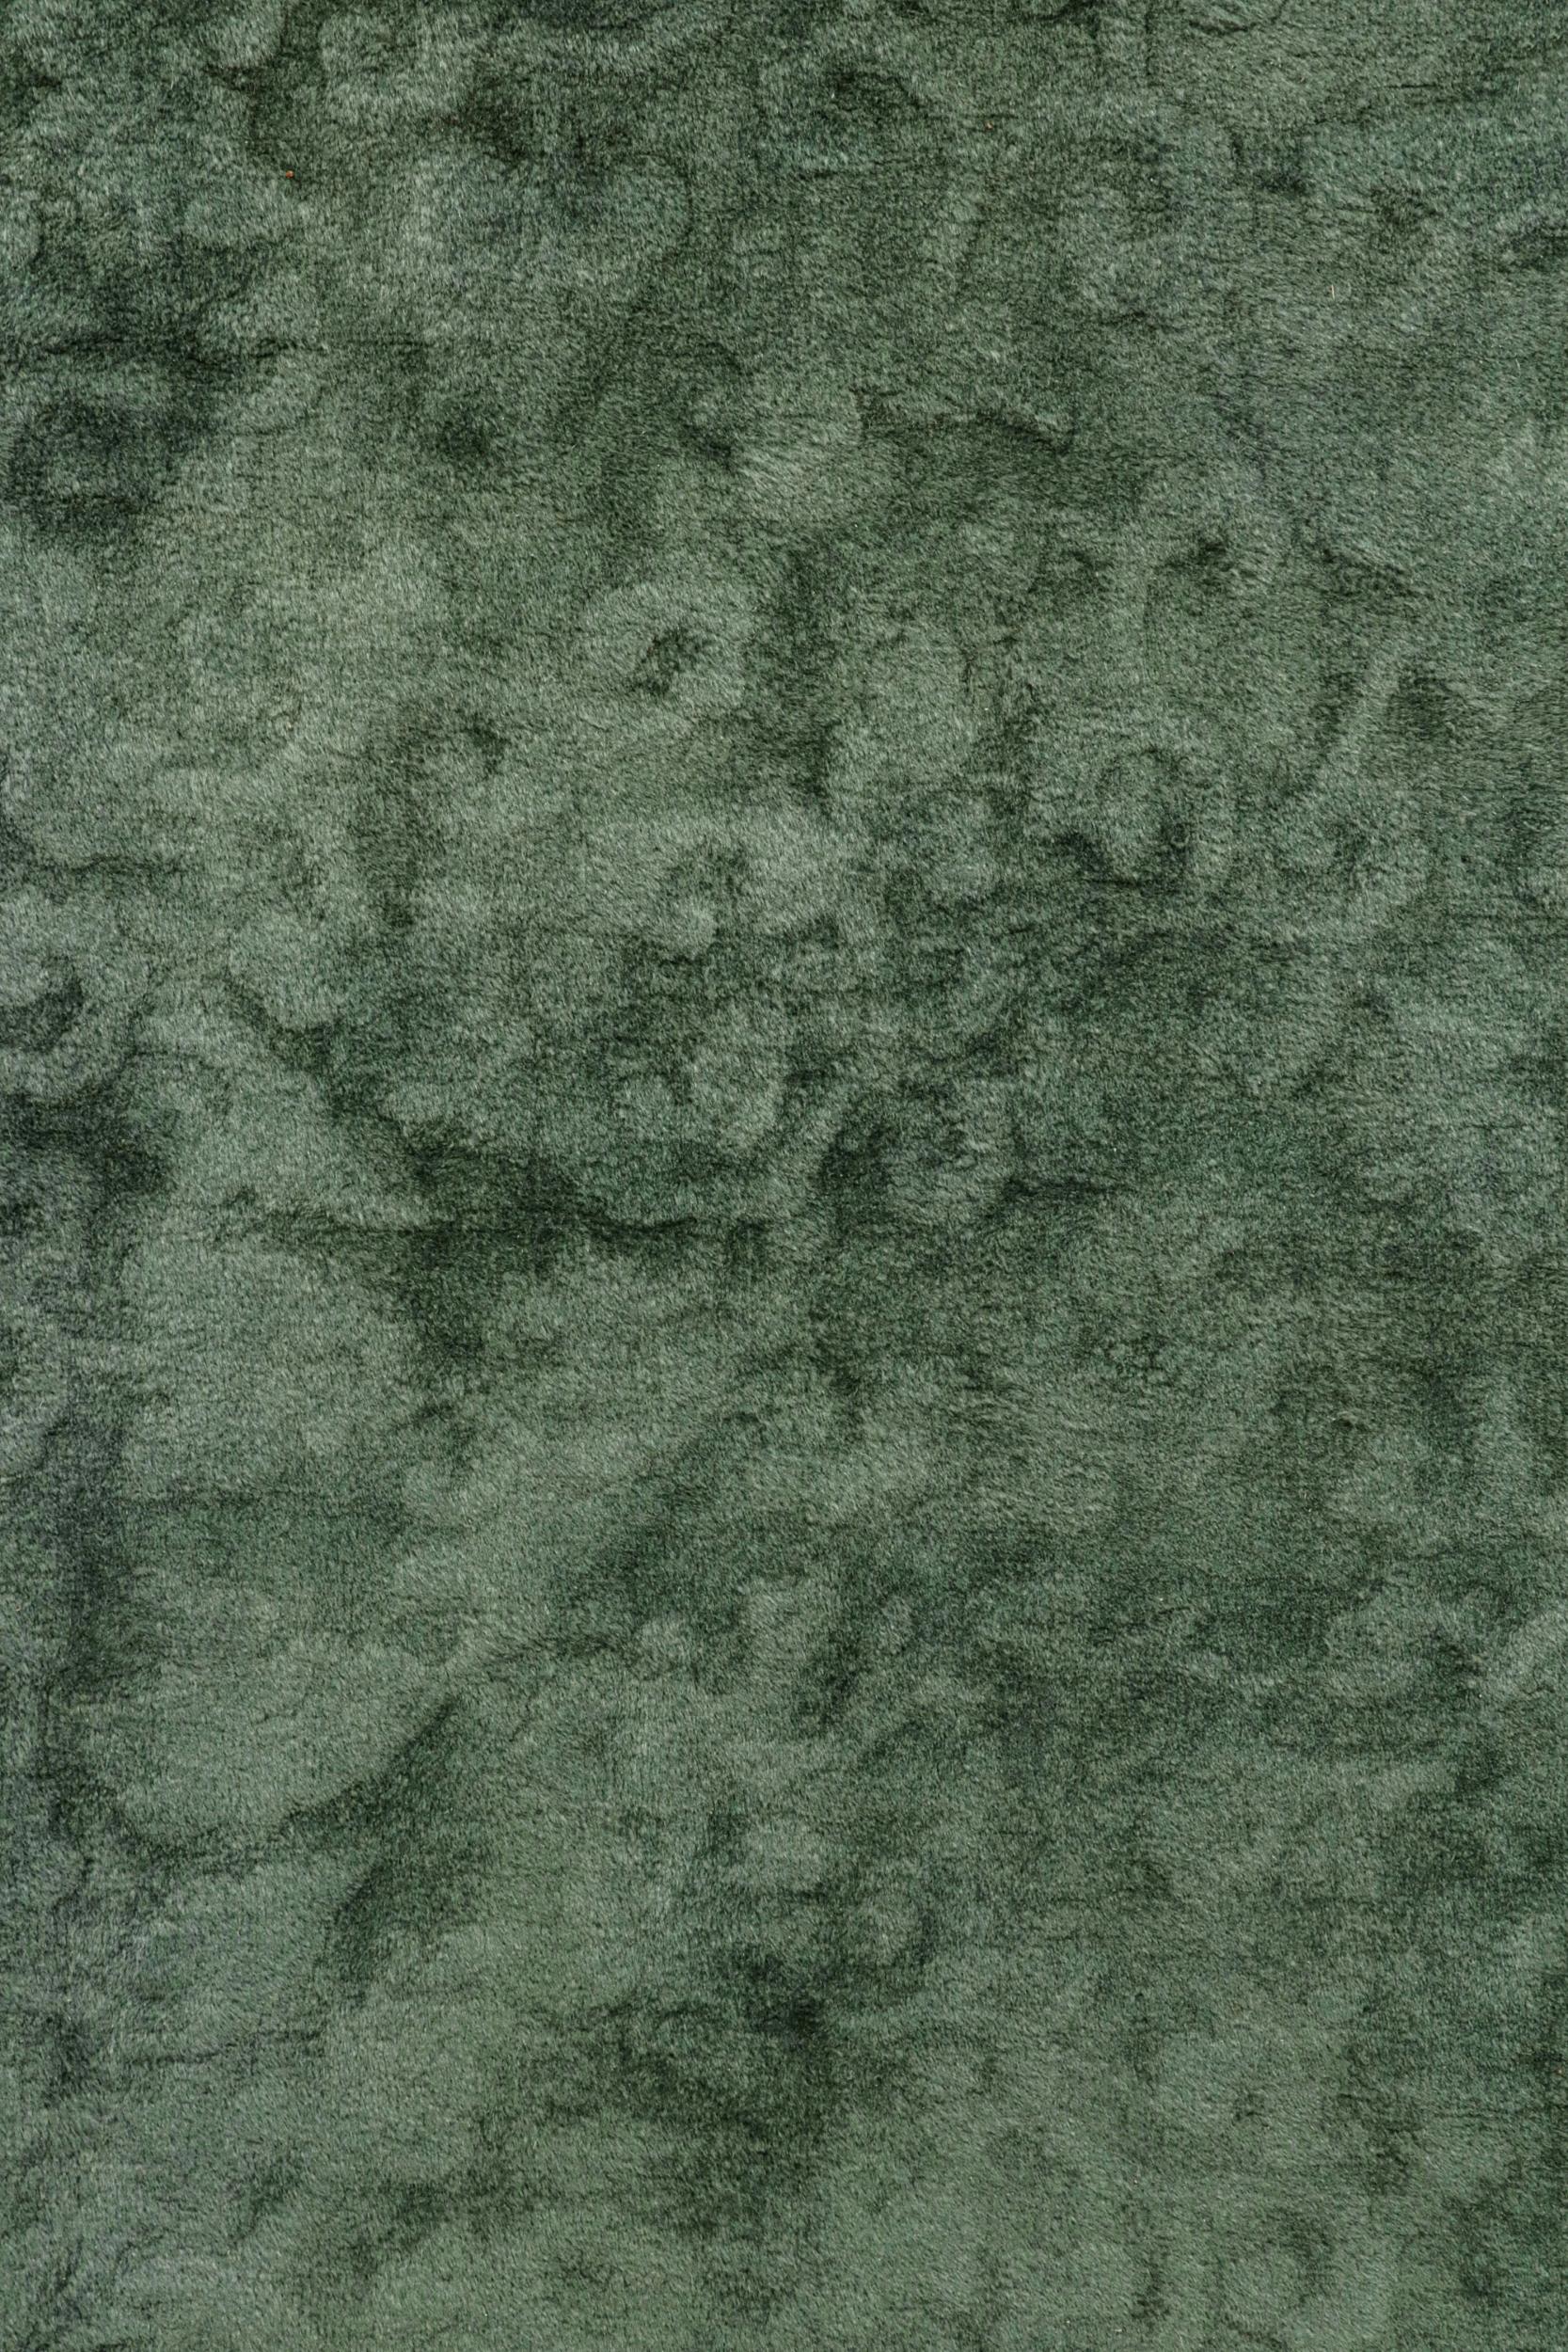 Der 12x14-Teppich  ist ein antiker chinesischer Art-Deco-Teppich aus den 1920er Jahren. Handgeknüpft aus Wolle.

Über das Design: 

Dieser Teppich im chinesischen Deco-Stil zeichnet sich durch eine seltene hohe und niedrige Textur in Verbindung mit